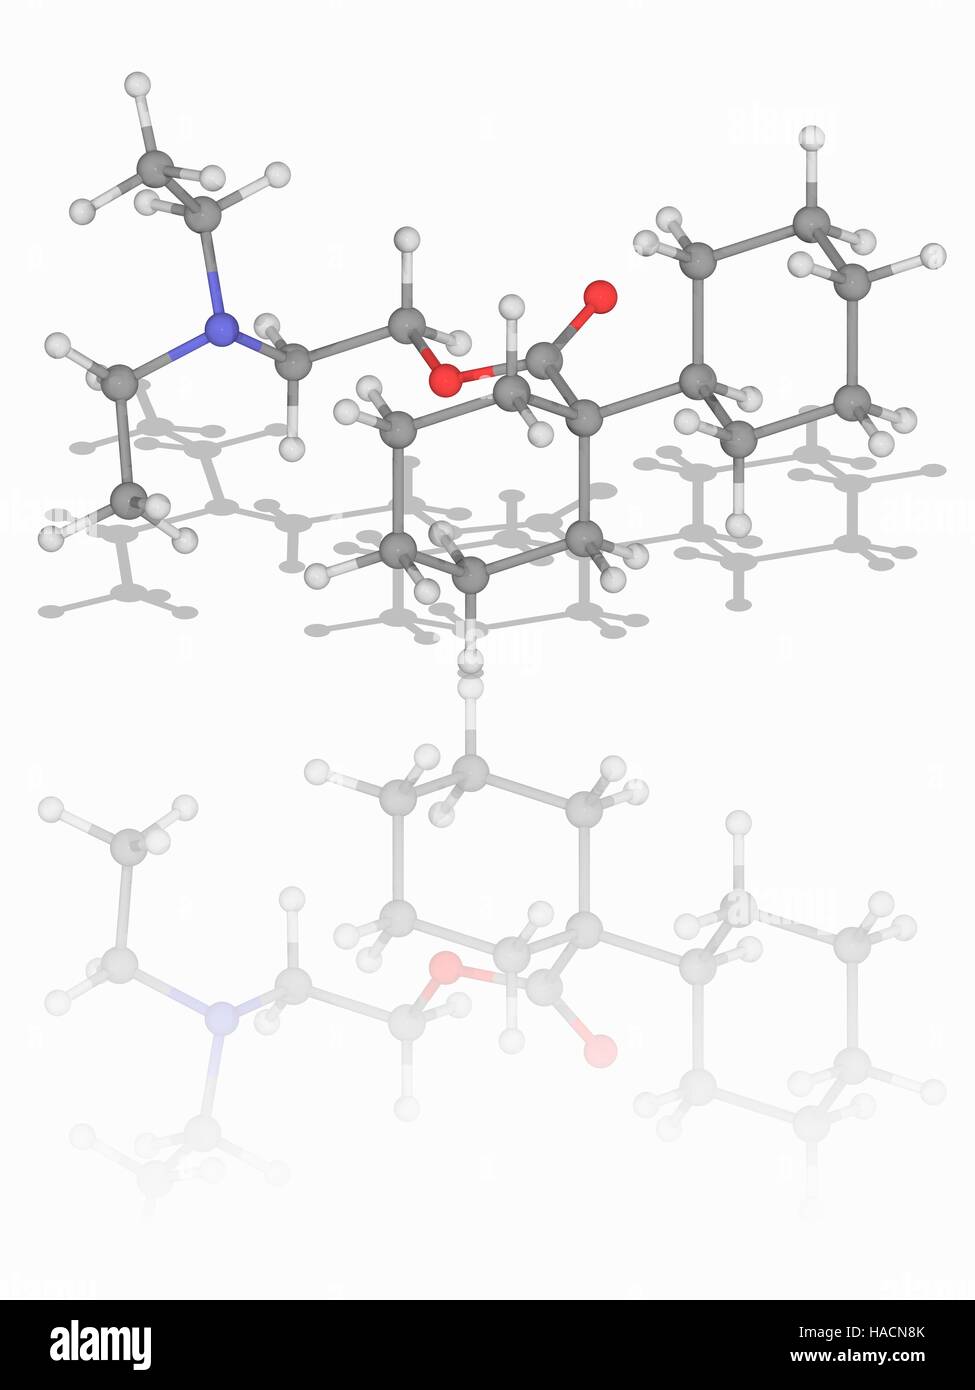 Dicyclomine. Molekulares Modell des Medikaments Dicyclomine (C19. H35. N.O2), auch bekannt als Dicycloverine. Dies ist eine Anti-cholinergen (Blocker von Acetylcholin) zur Behandlung von Darm Hypermotilität, die Symptome des Reizdarm. Atome als Kugeln dargestellt werden und sind farblich gekennzeichnet: Kohlenstoff (grau), Wasserstoff (weiß), Stickstoff (blau) und Sauerstoff (rot). Abbildung. Stockfoto